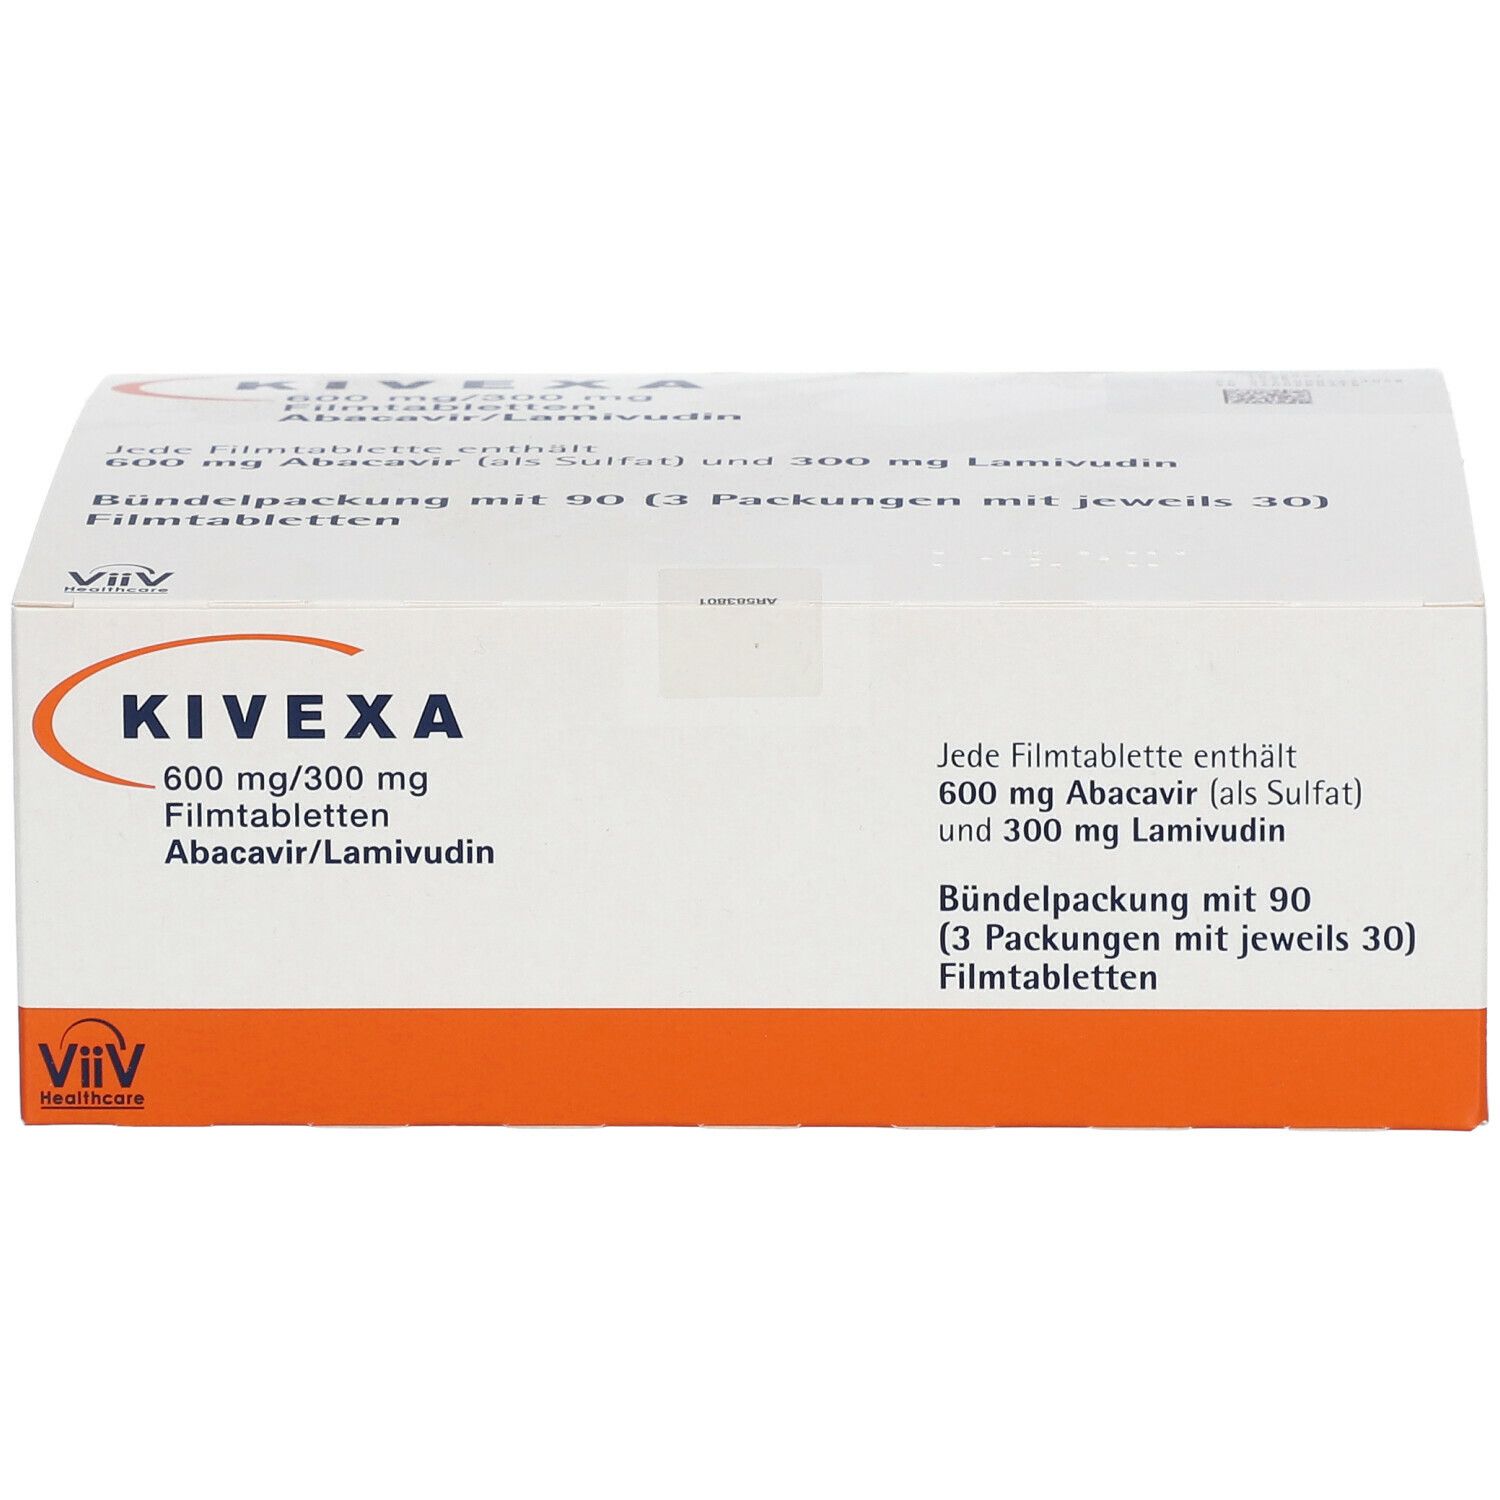 Kivexa® 600 mg/300 mg